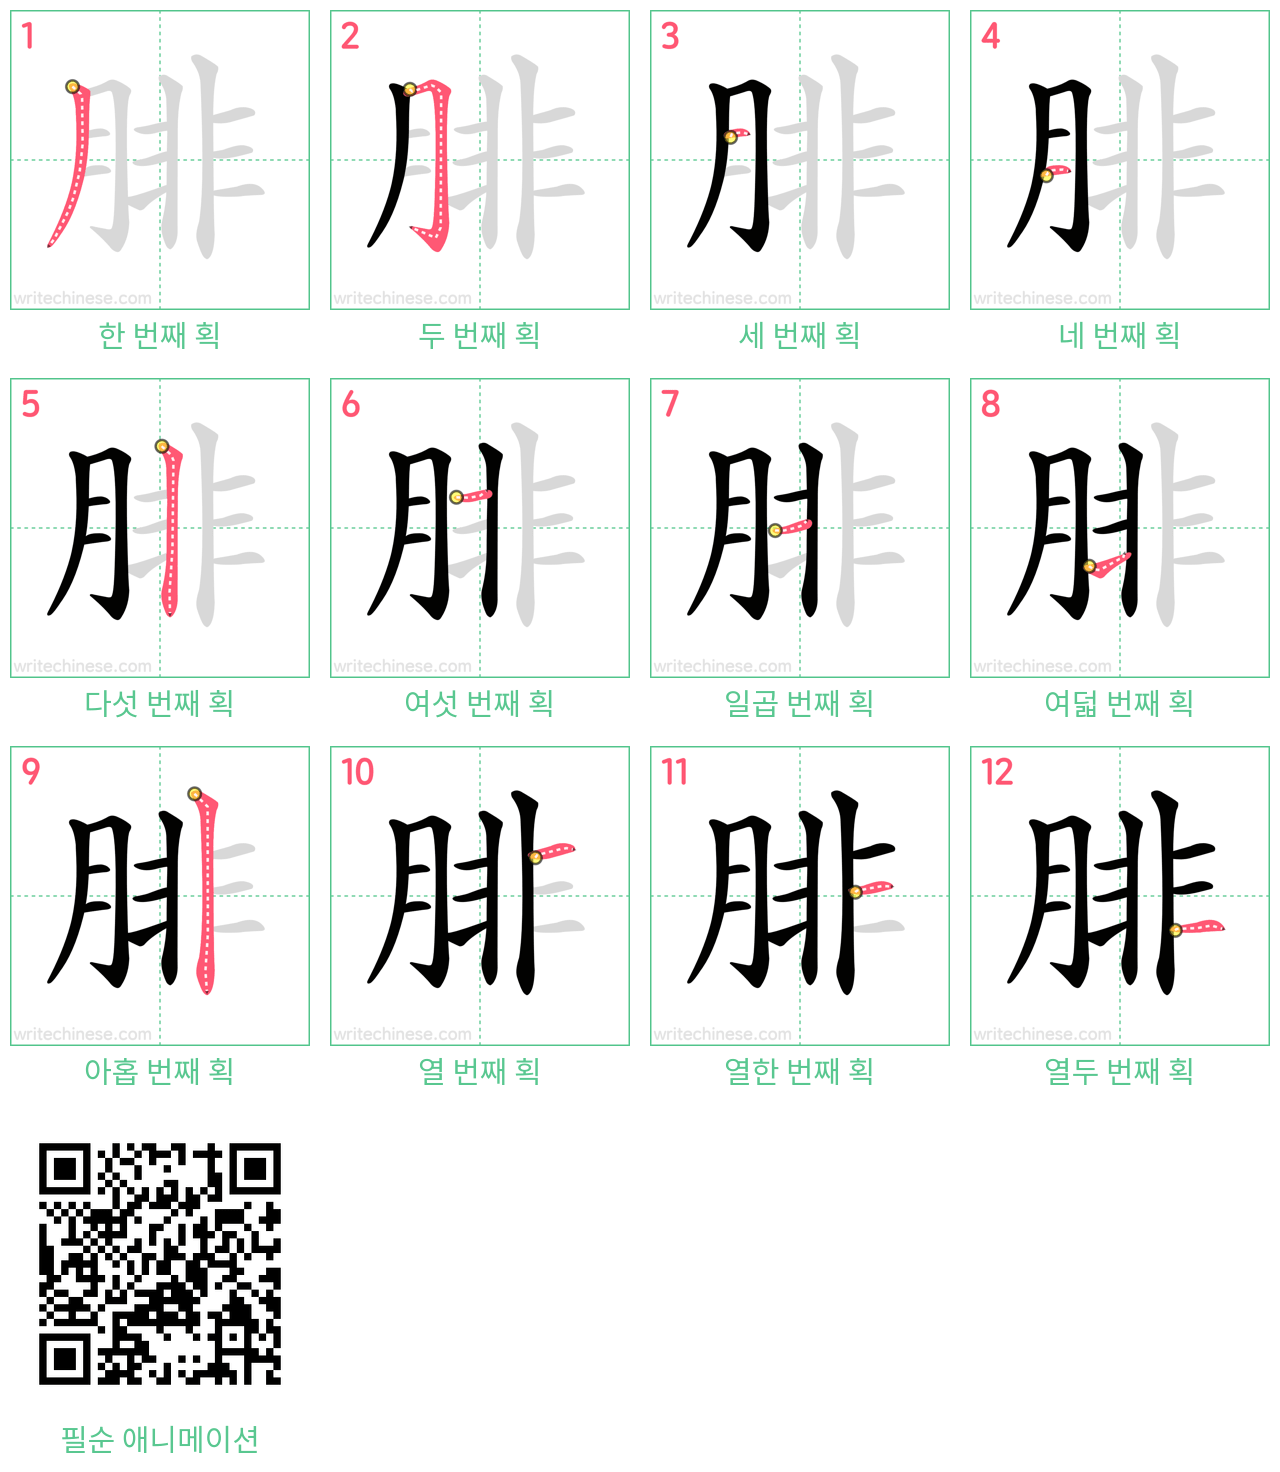 腓 step-by-step stroke order diagrams